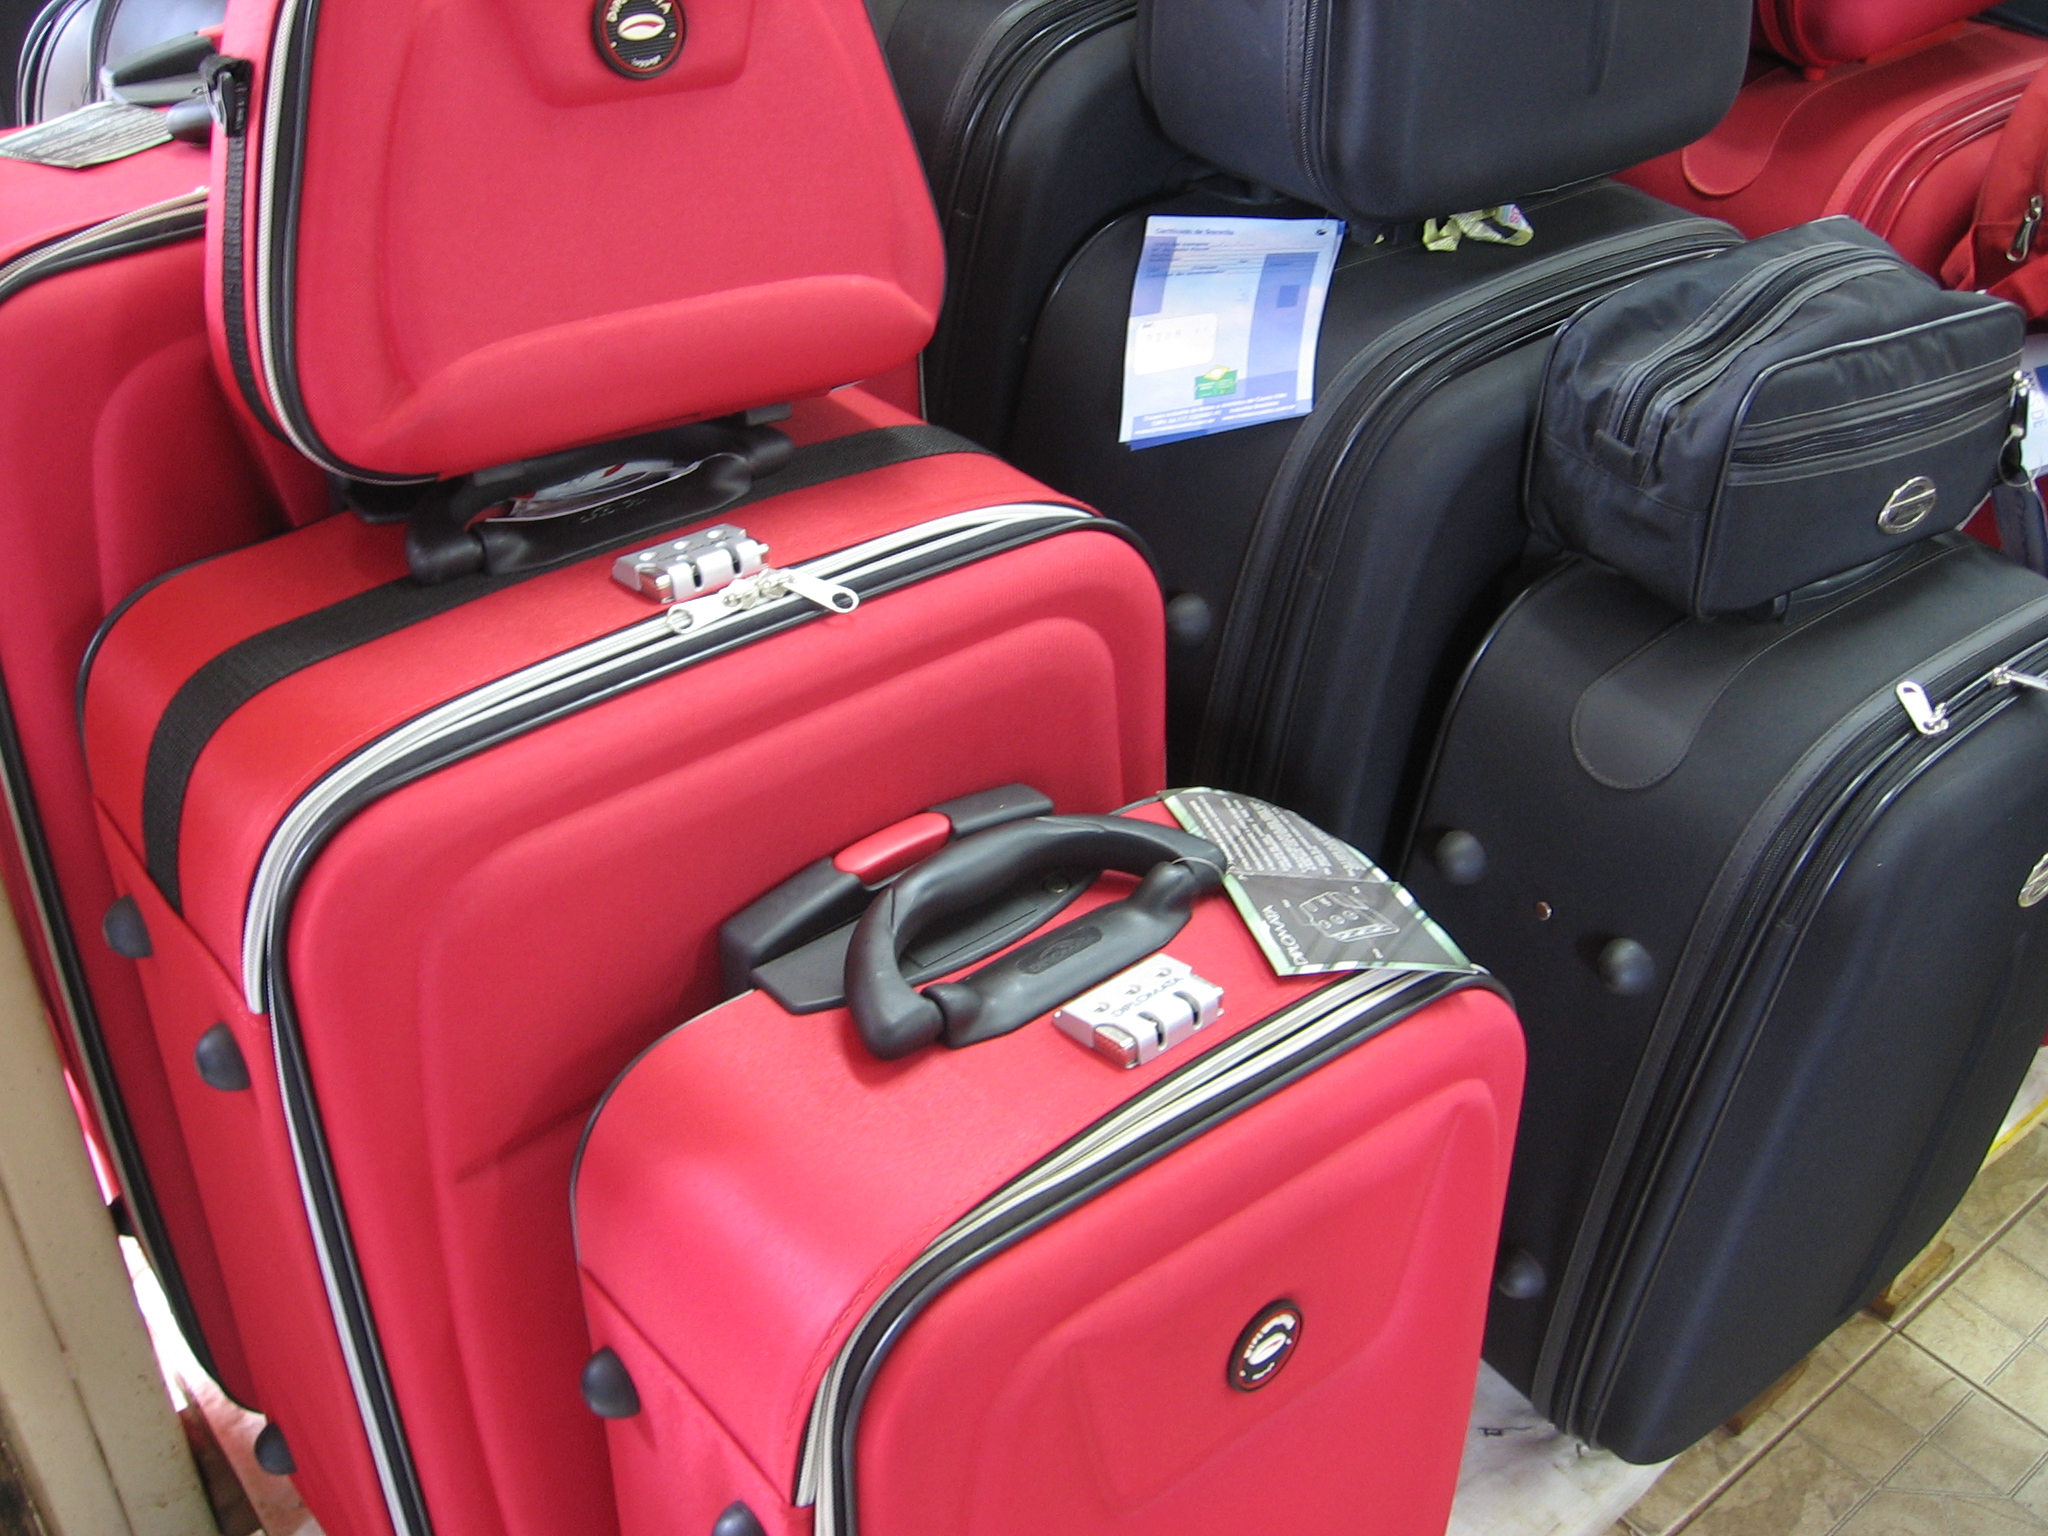 Abav alerta agentes sobre nova regra para bagagens